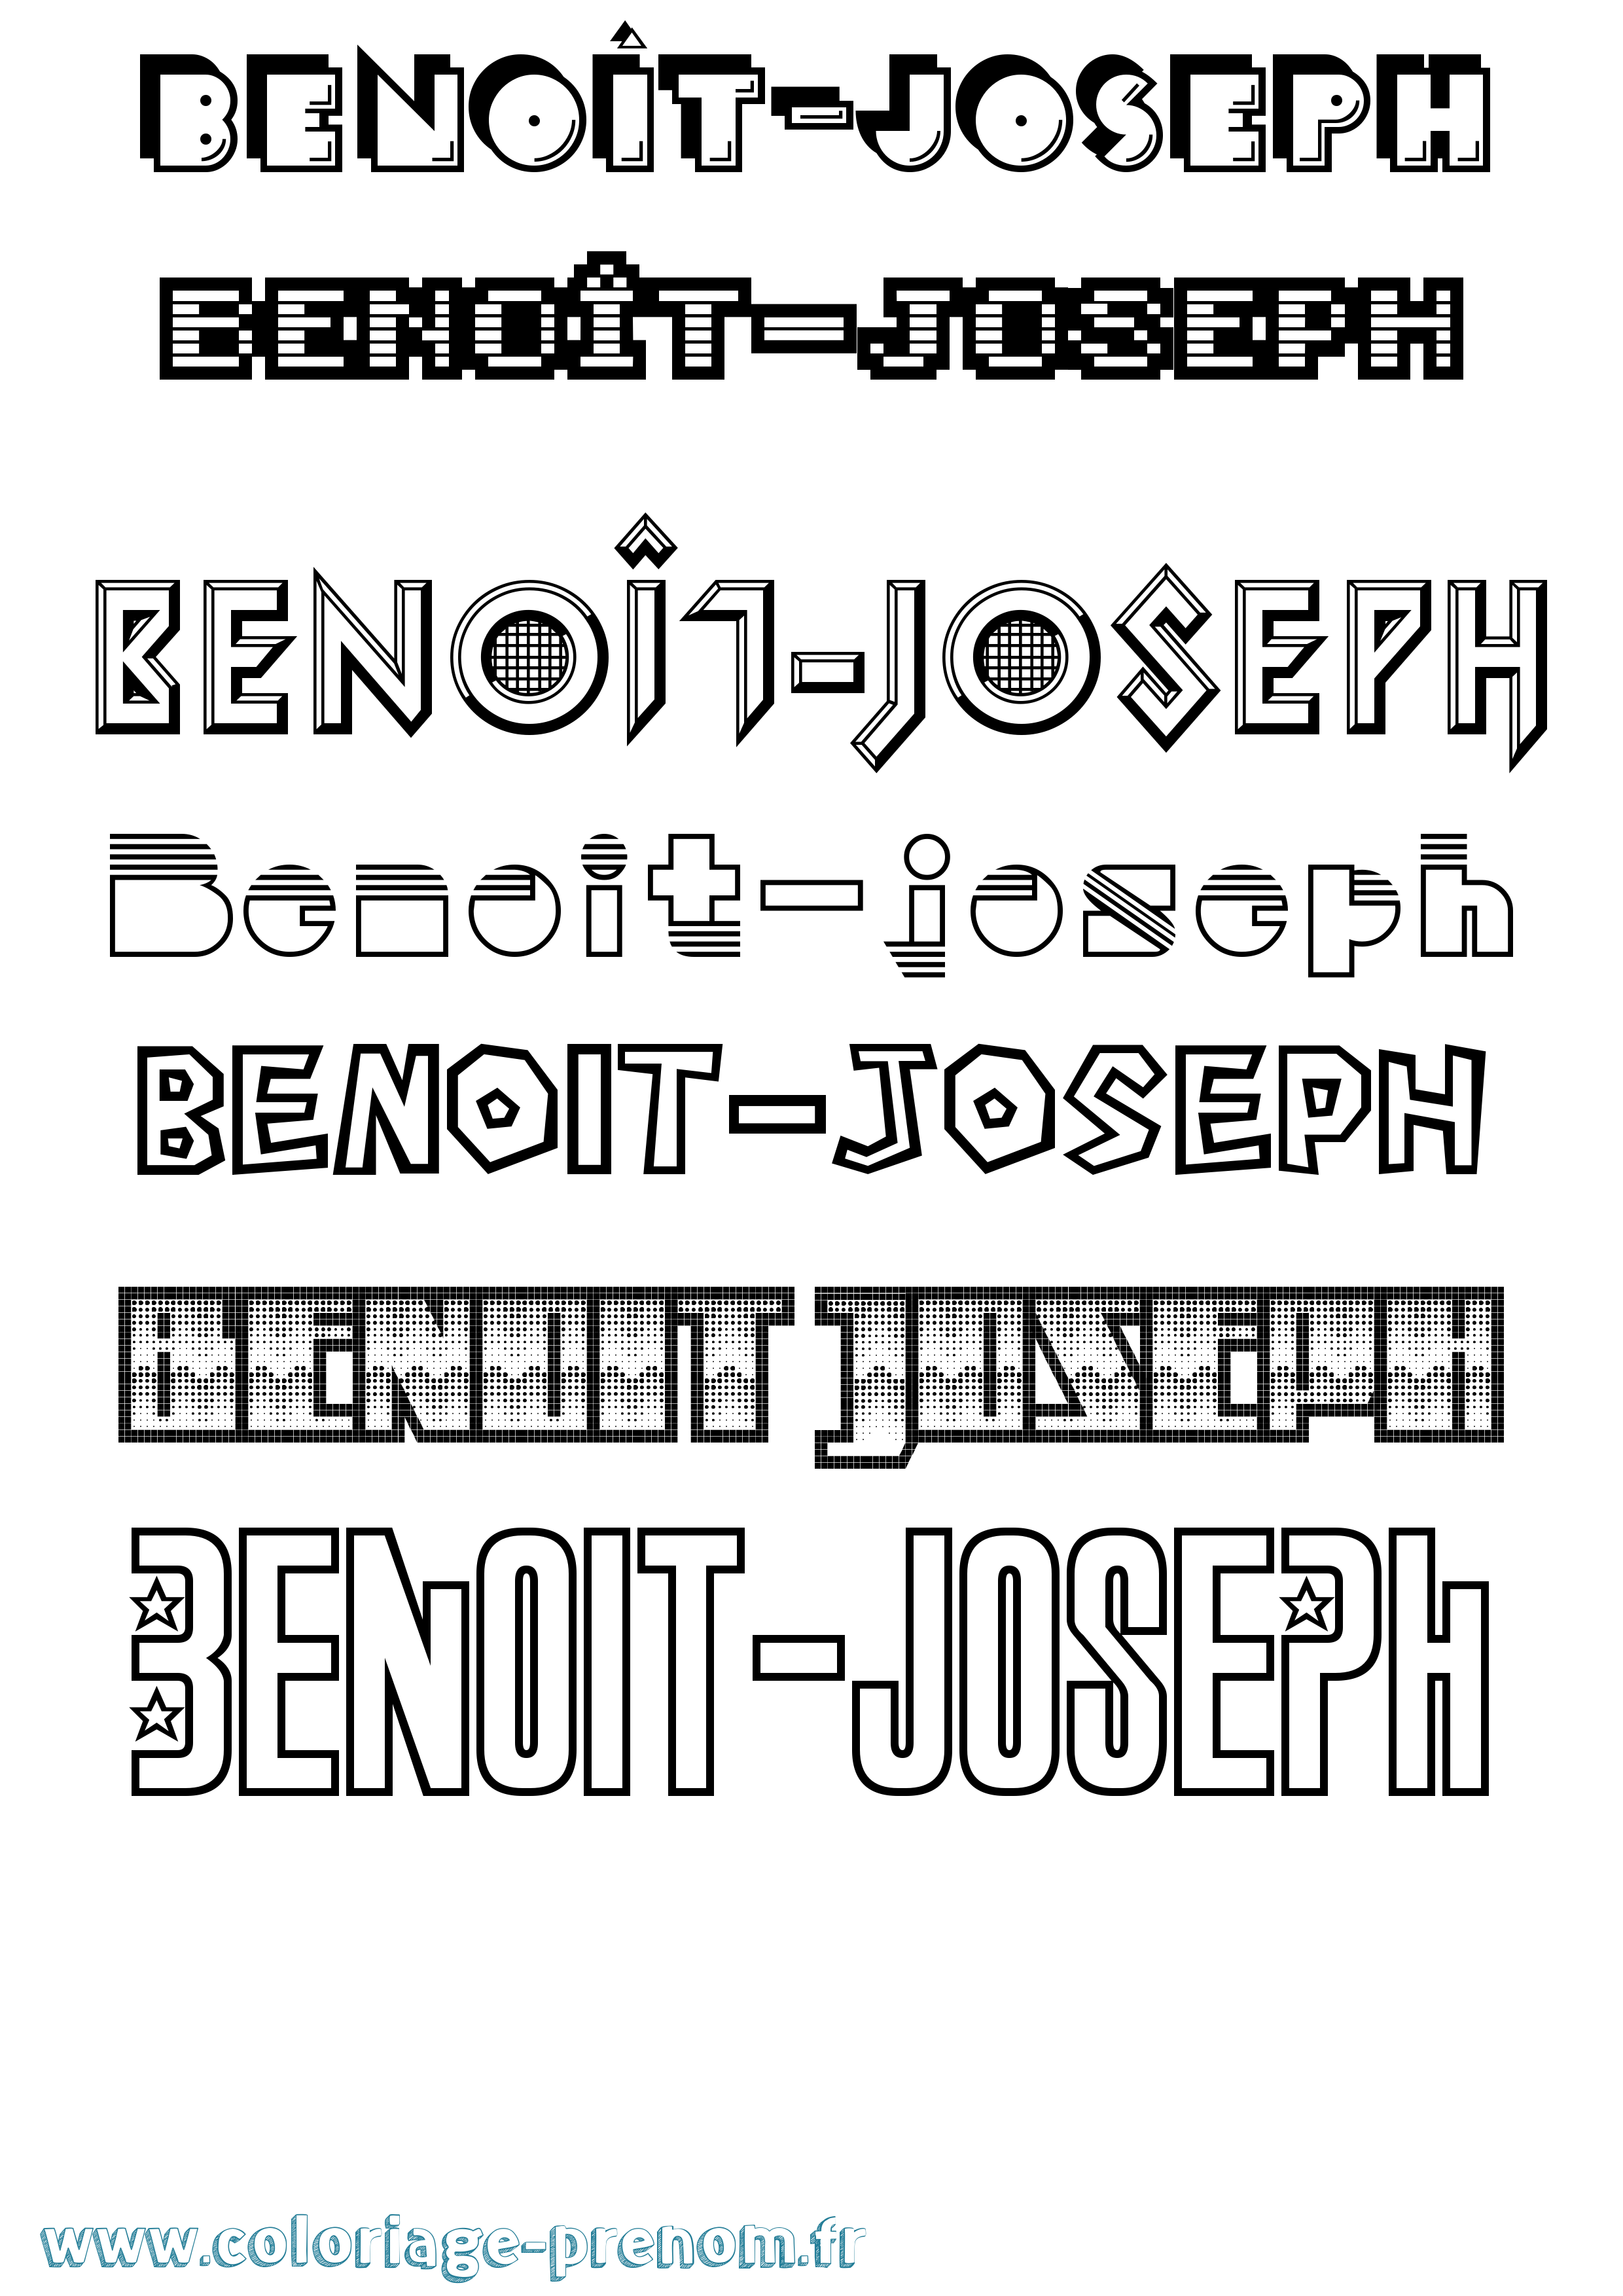 Coloriage prénom Benoît-Joseph Jeux Vidéos